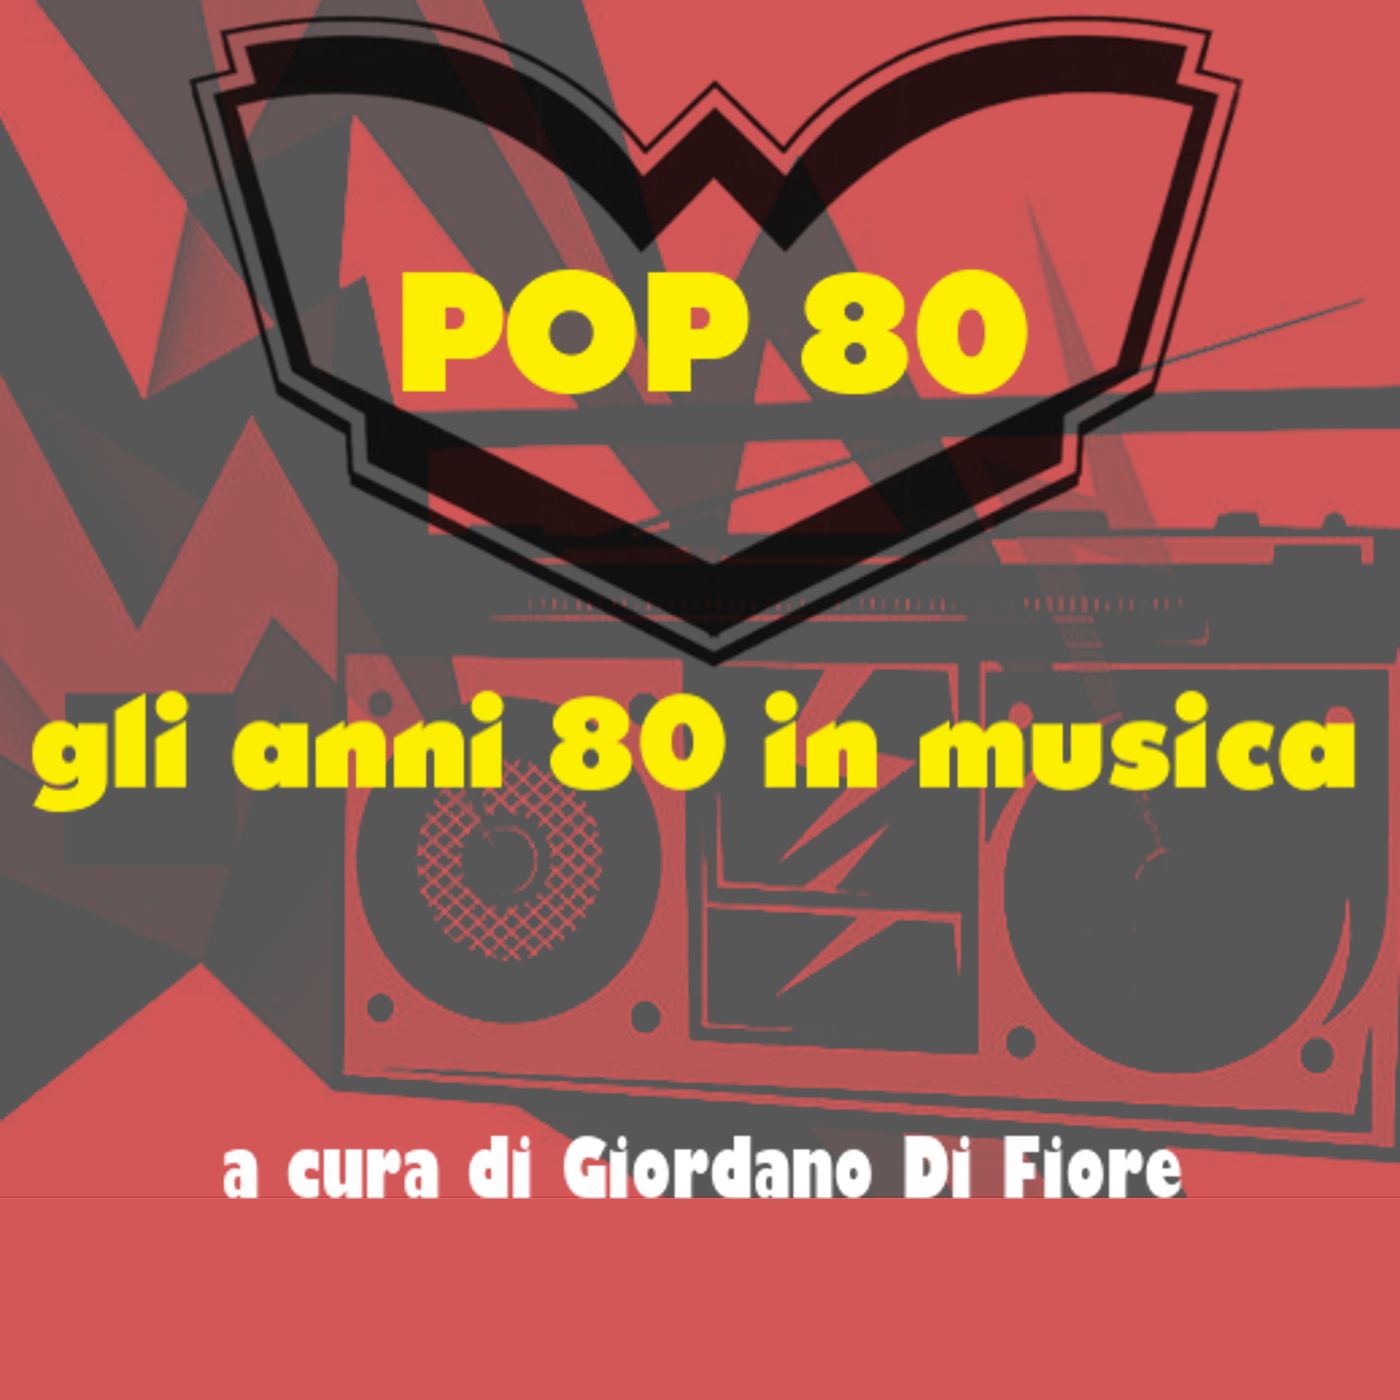 Pop 80 AirPlay - 22 June 2020